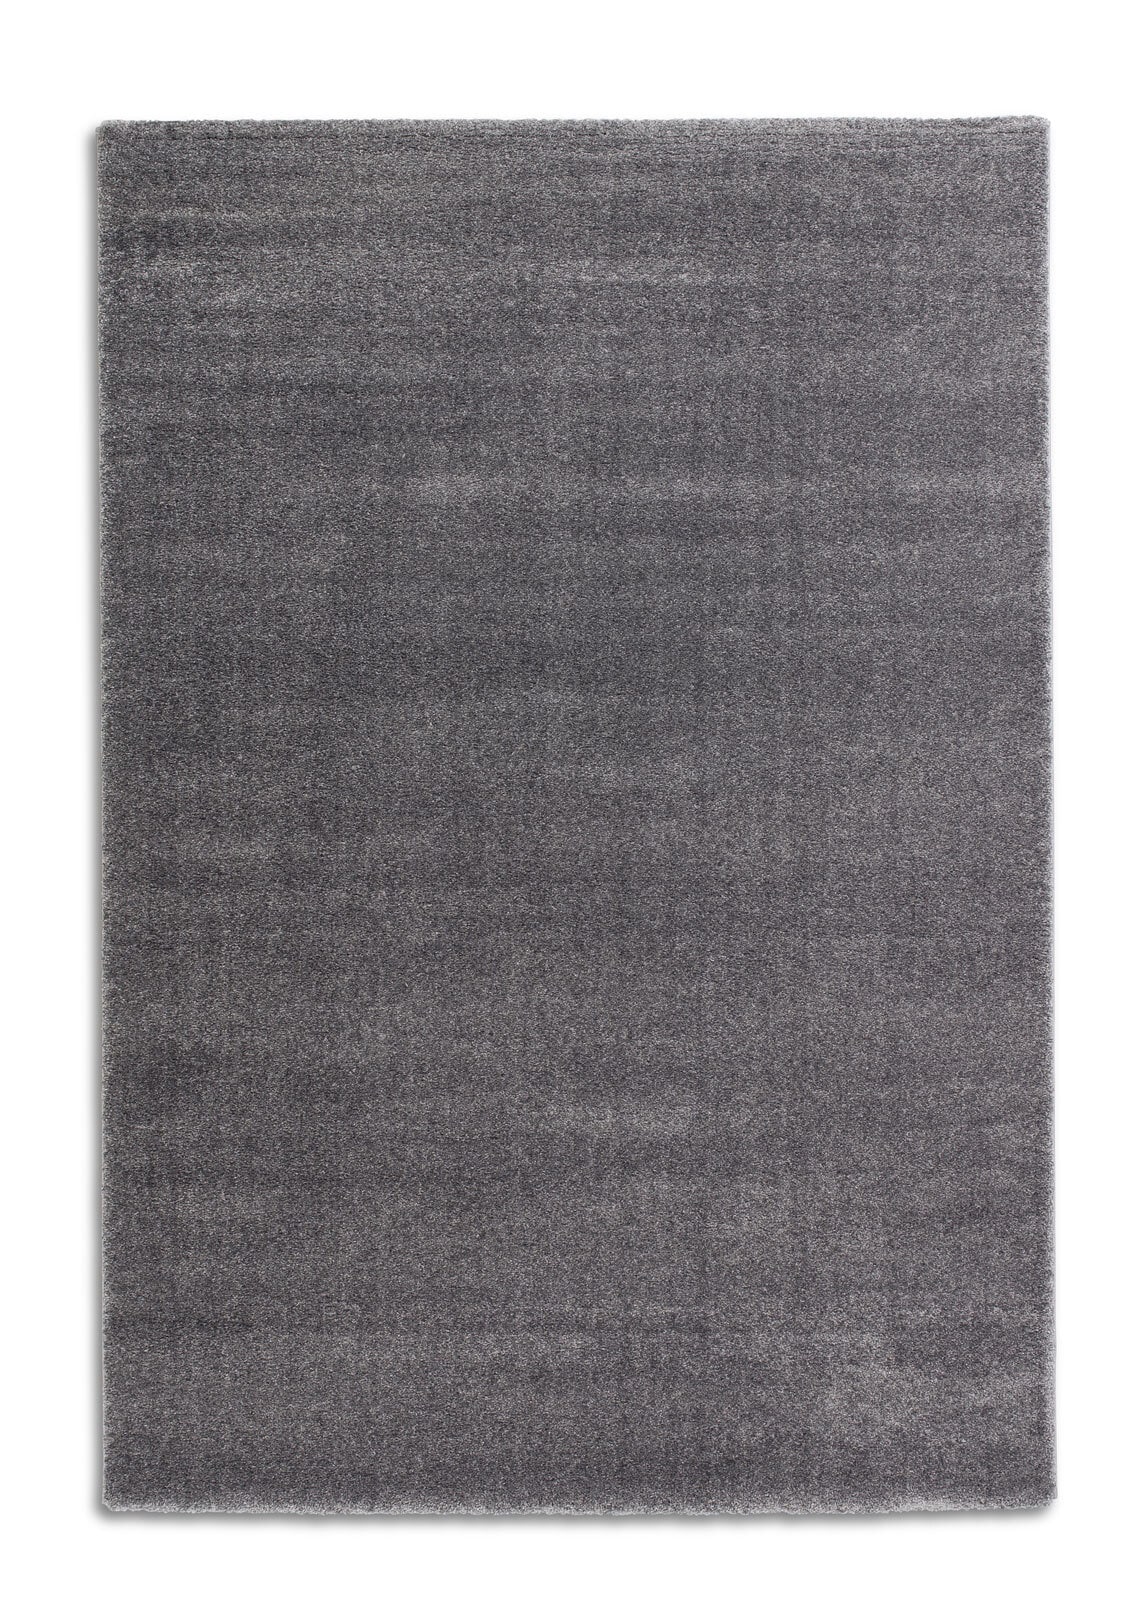 SCHÖNER WOHNEN-Kollektion Teppich JOY 160 x 230 cm grau